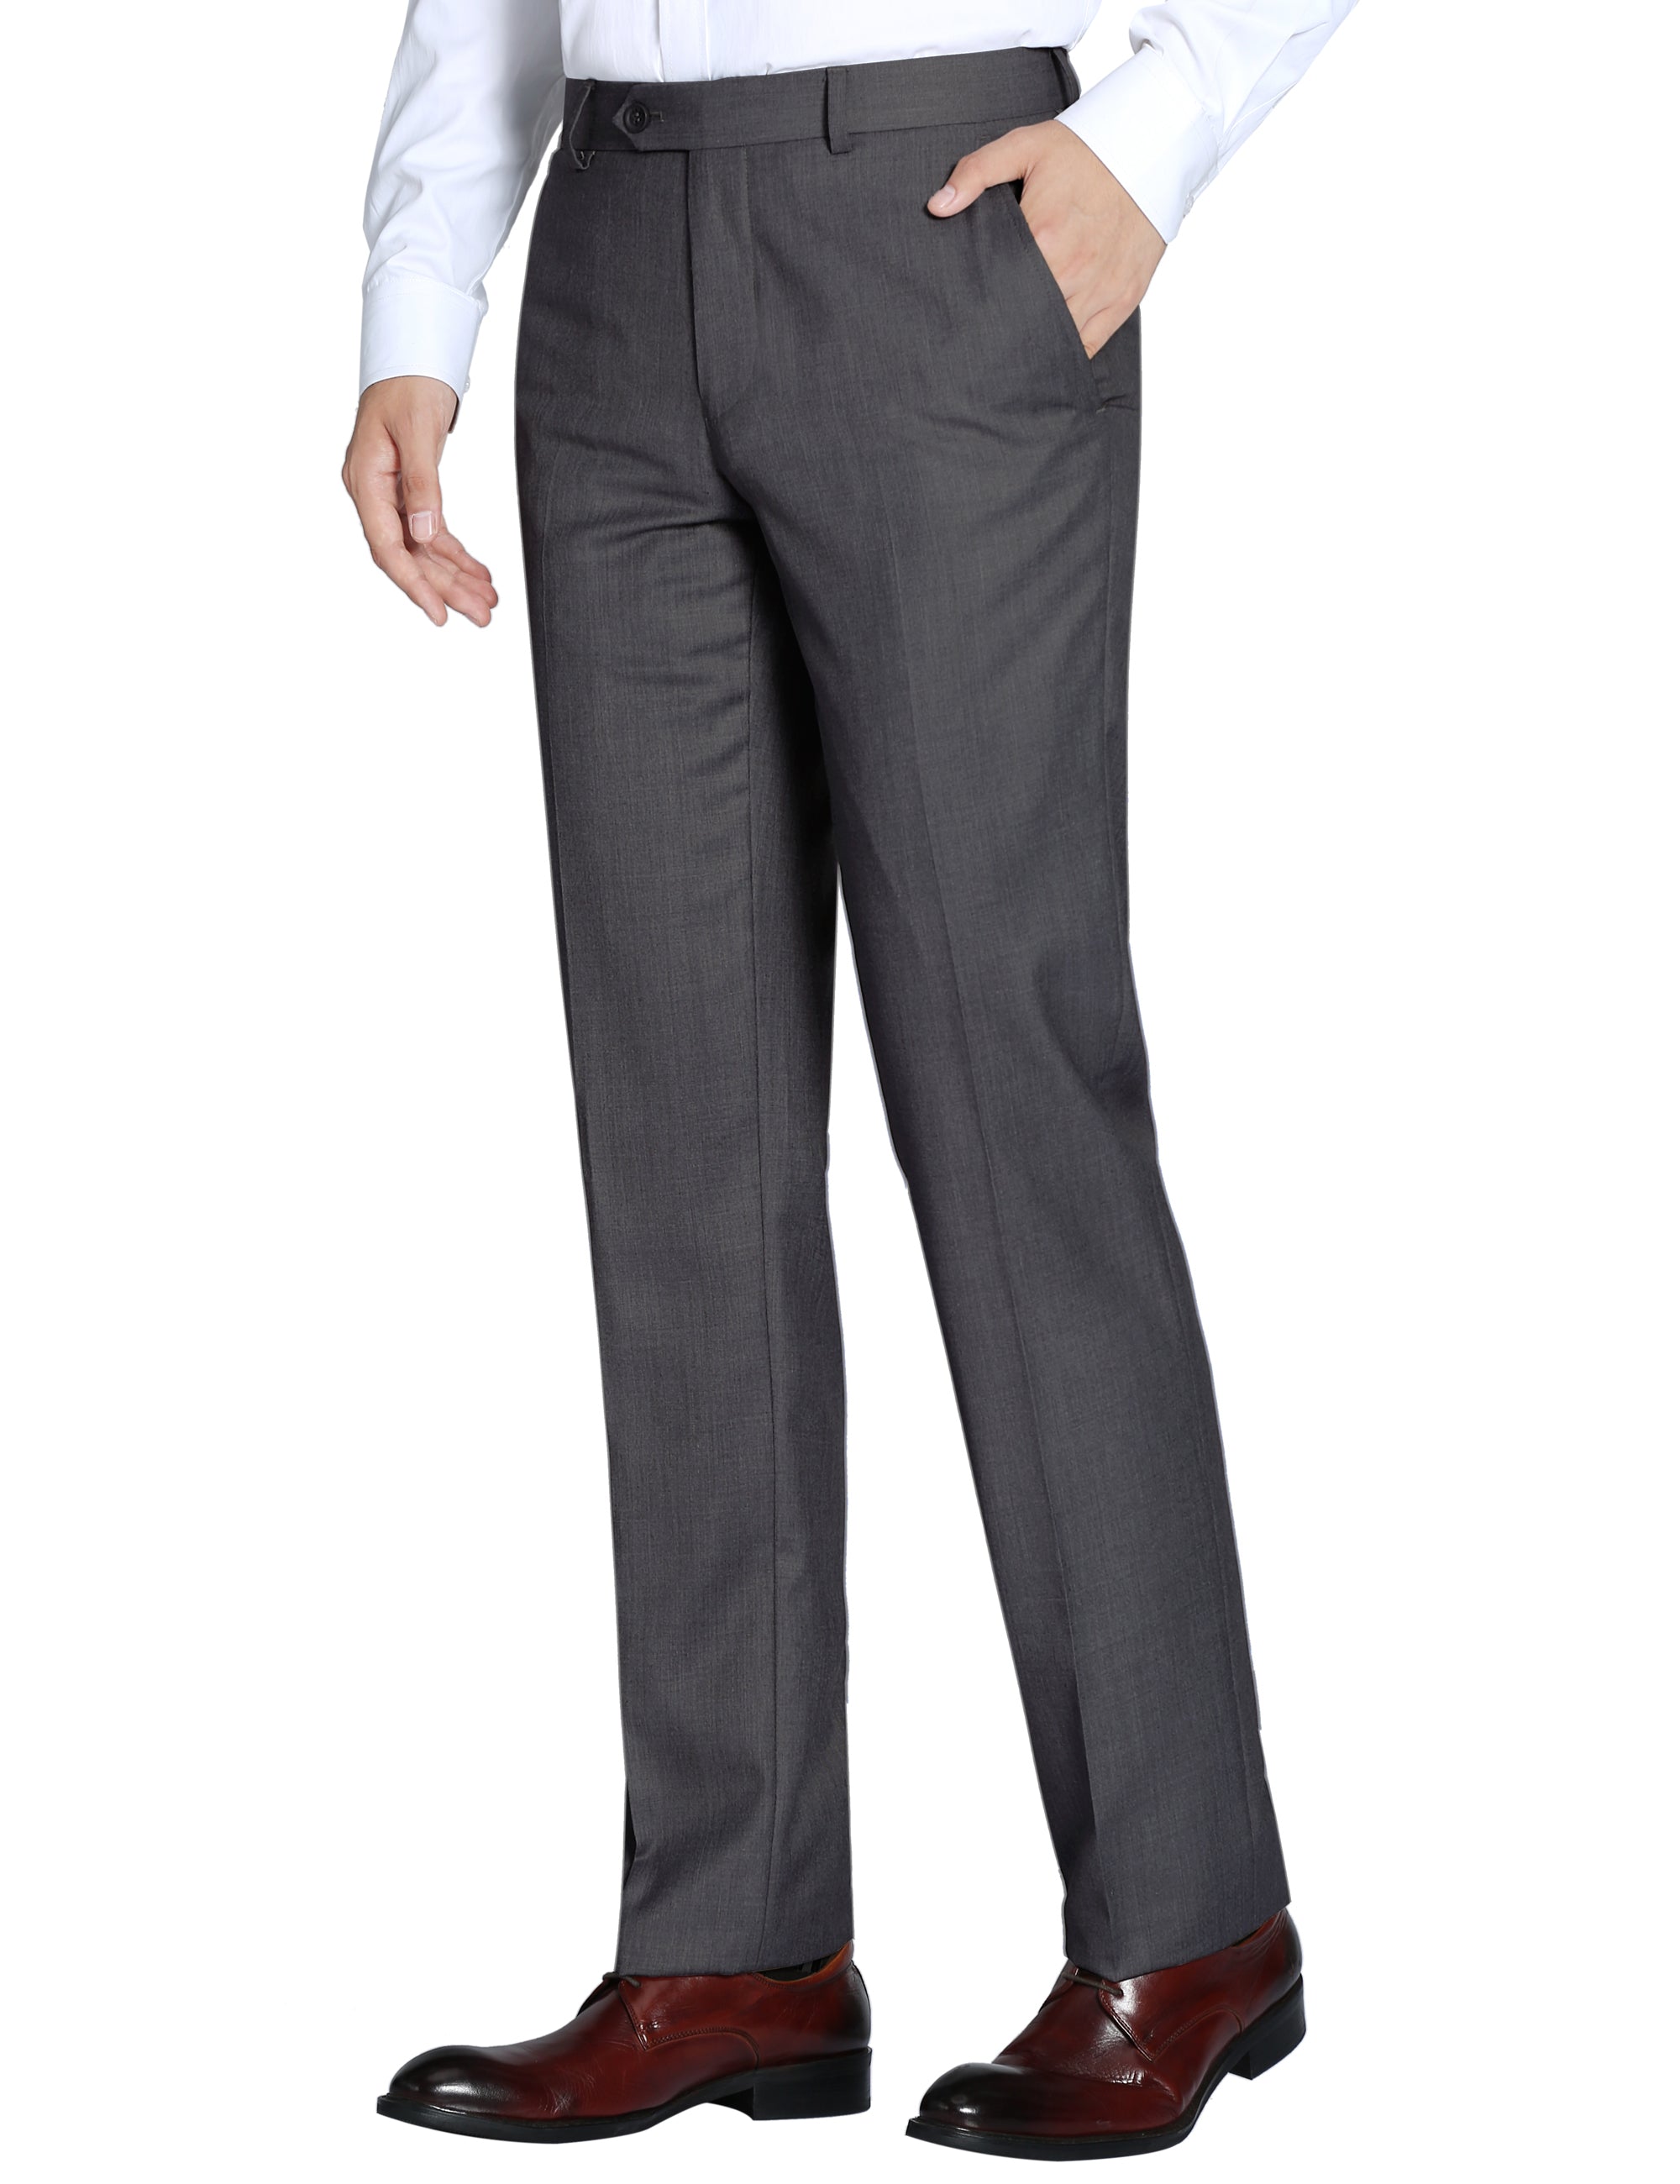 FINAL SALE Pursuit Charcoal Two-Tone Check Slim Suit Pant